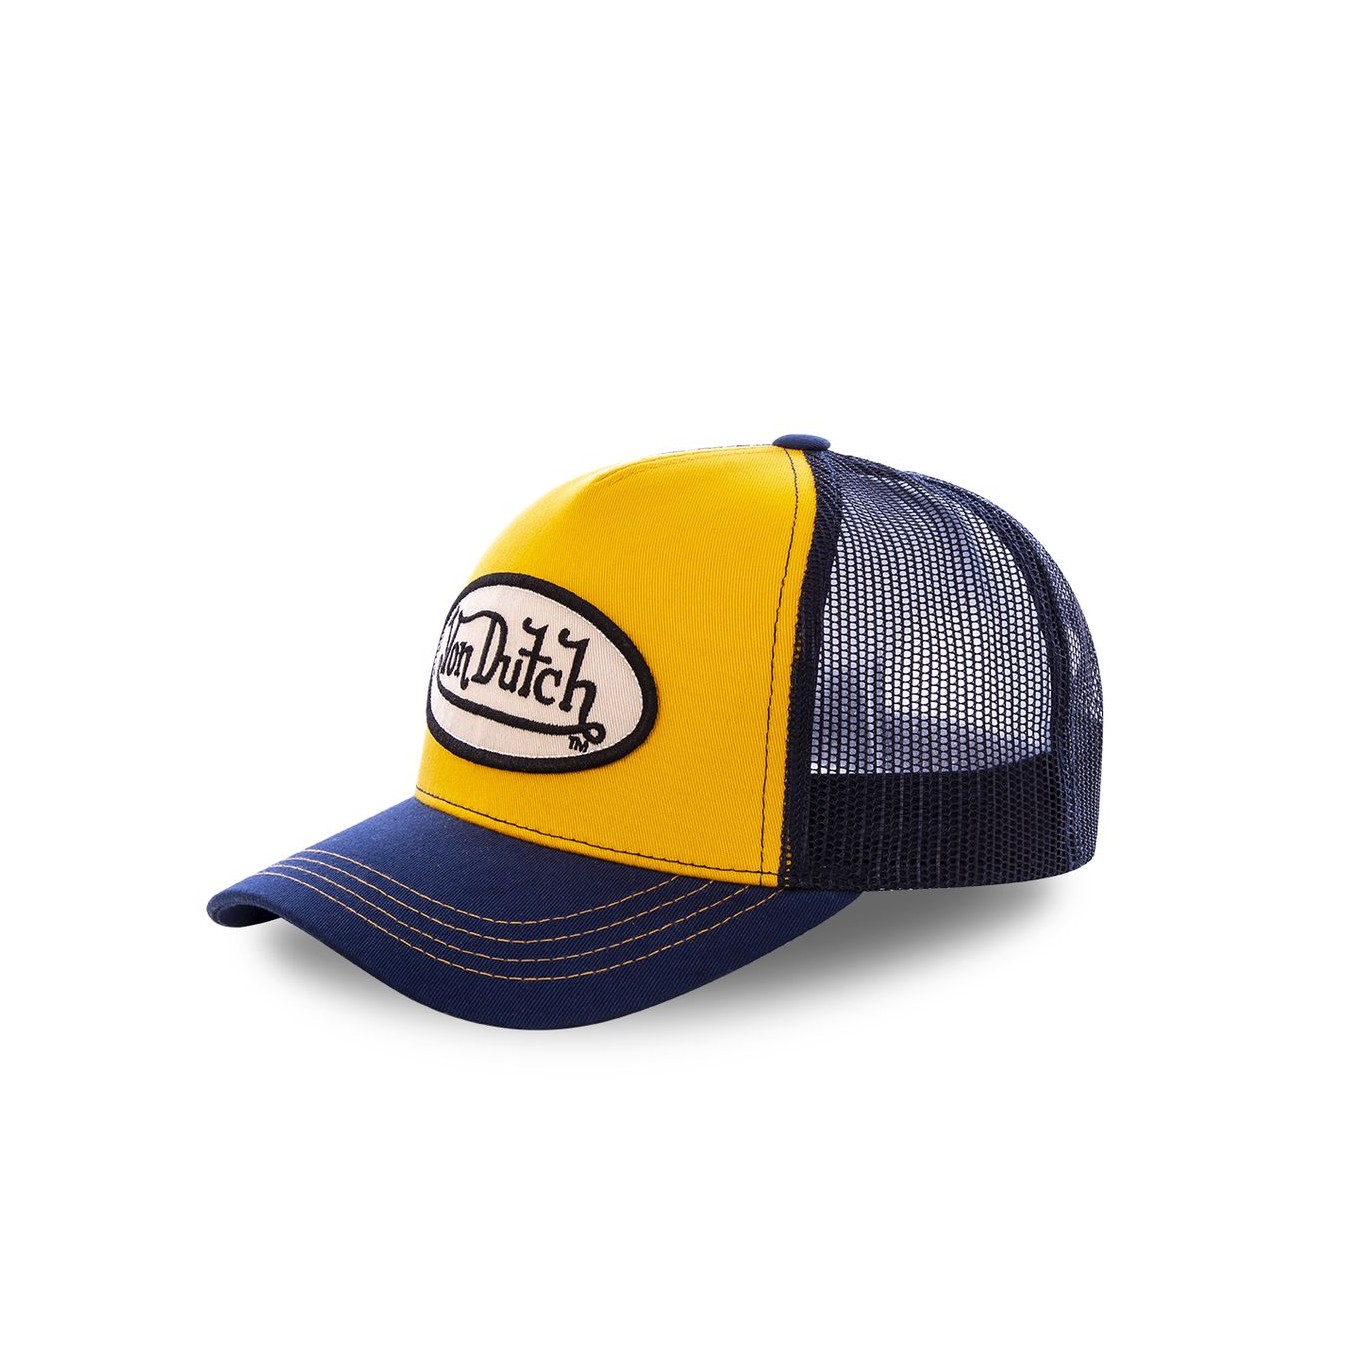 Von Dutch baseball cap in yellow and navy - Von Dutch